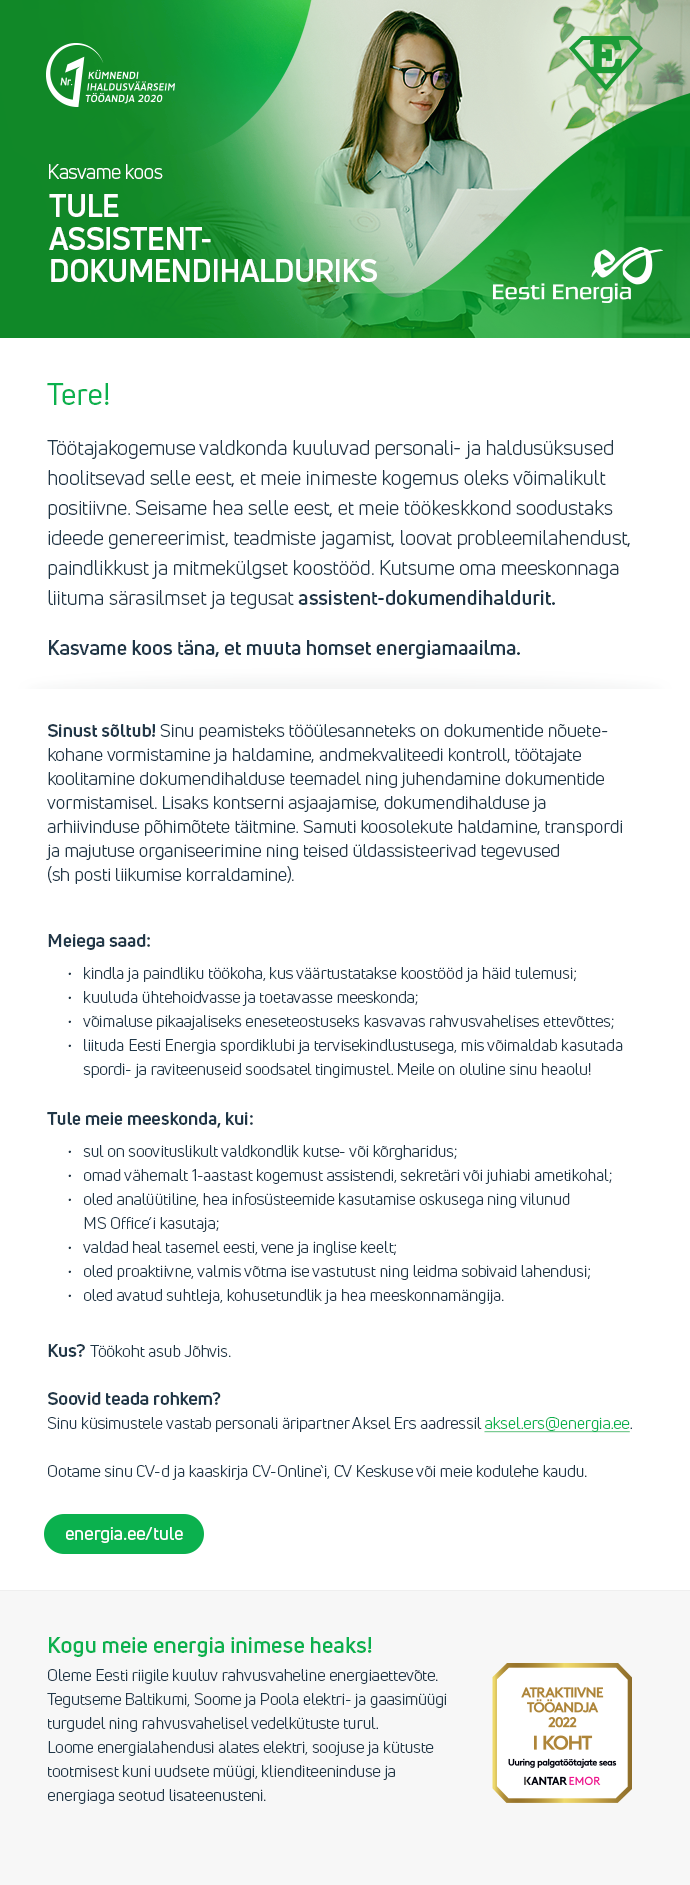 Eesti Energia AS ASSISTENT-DOKUMENDIHALDUR